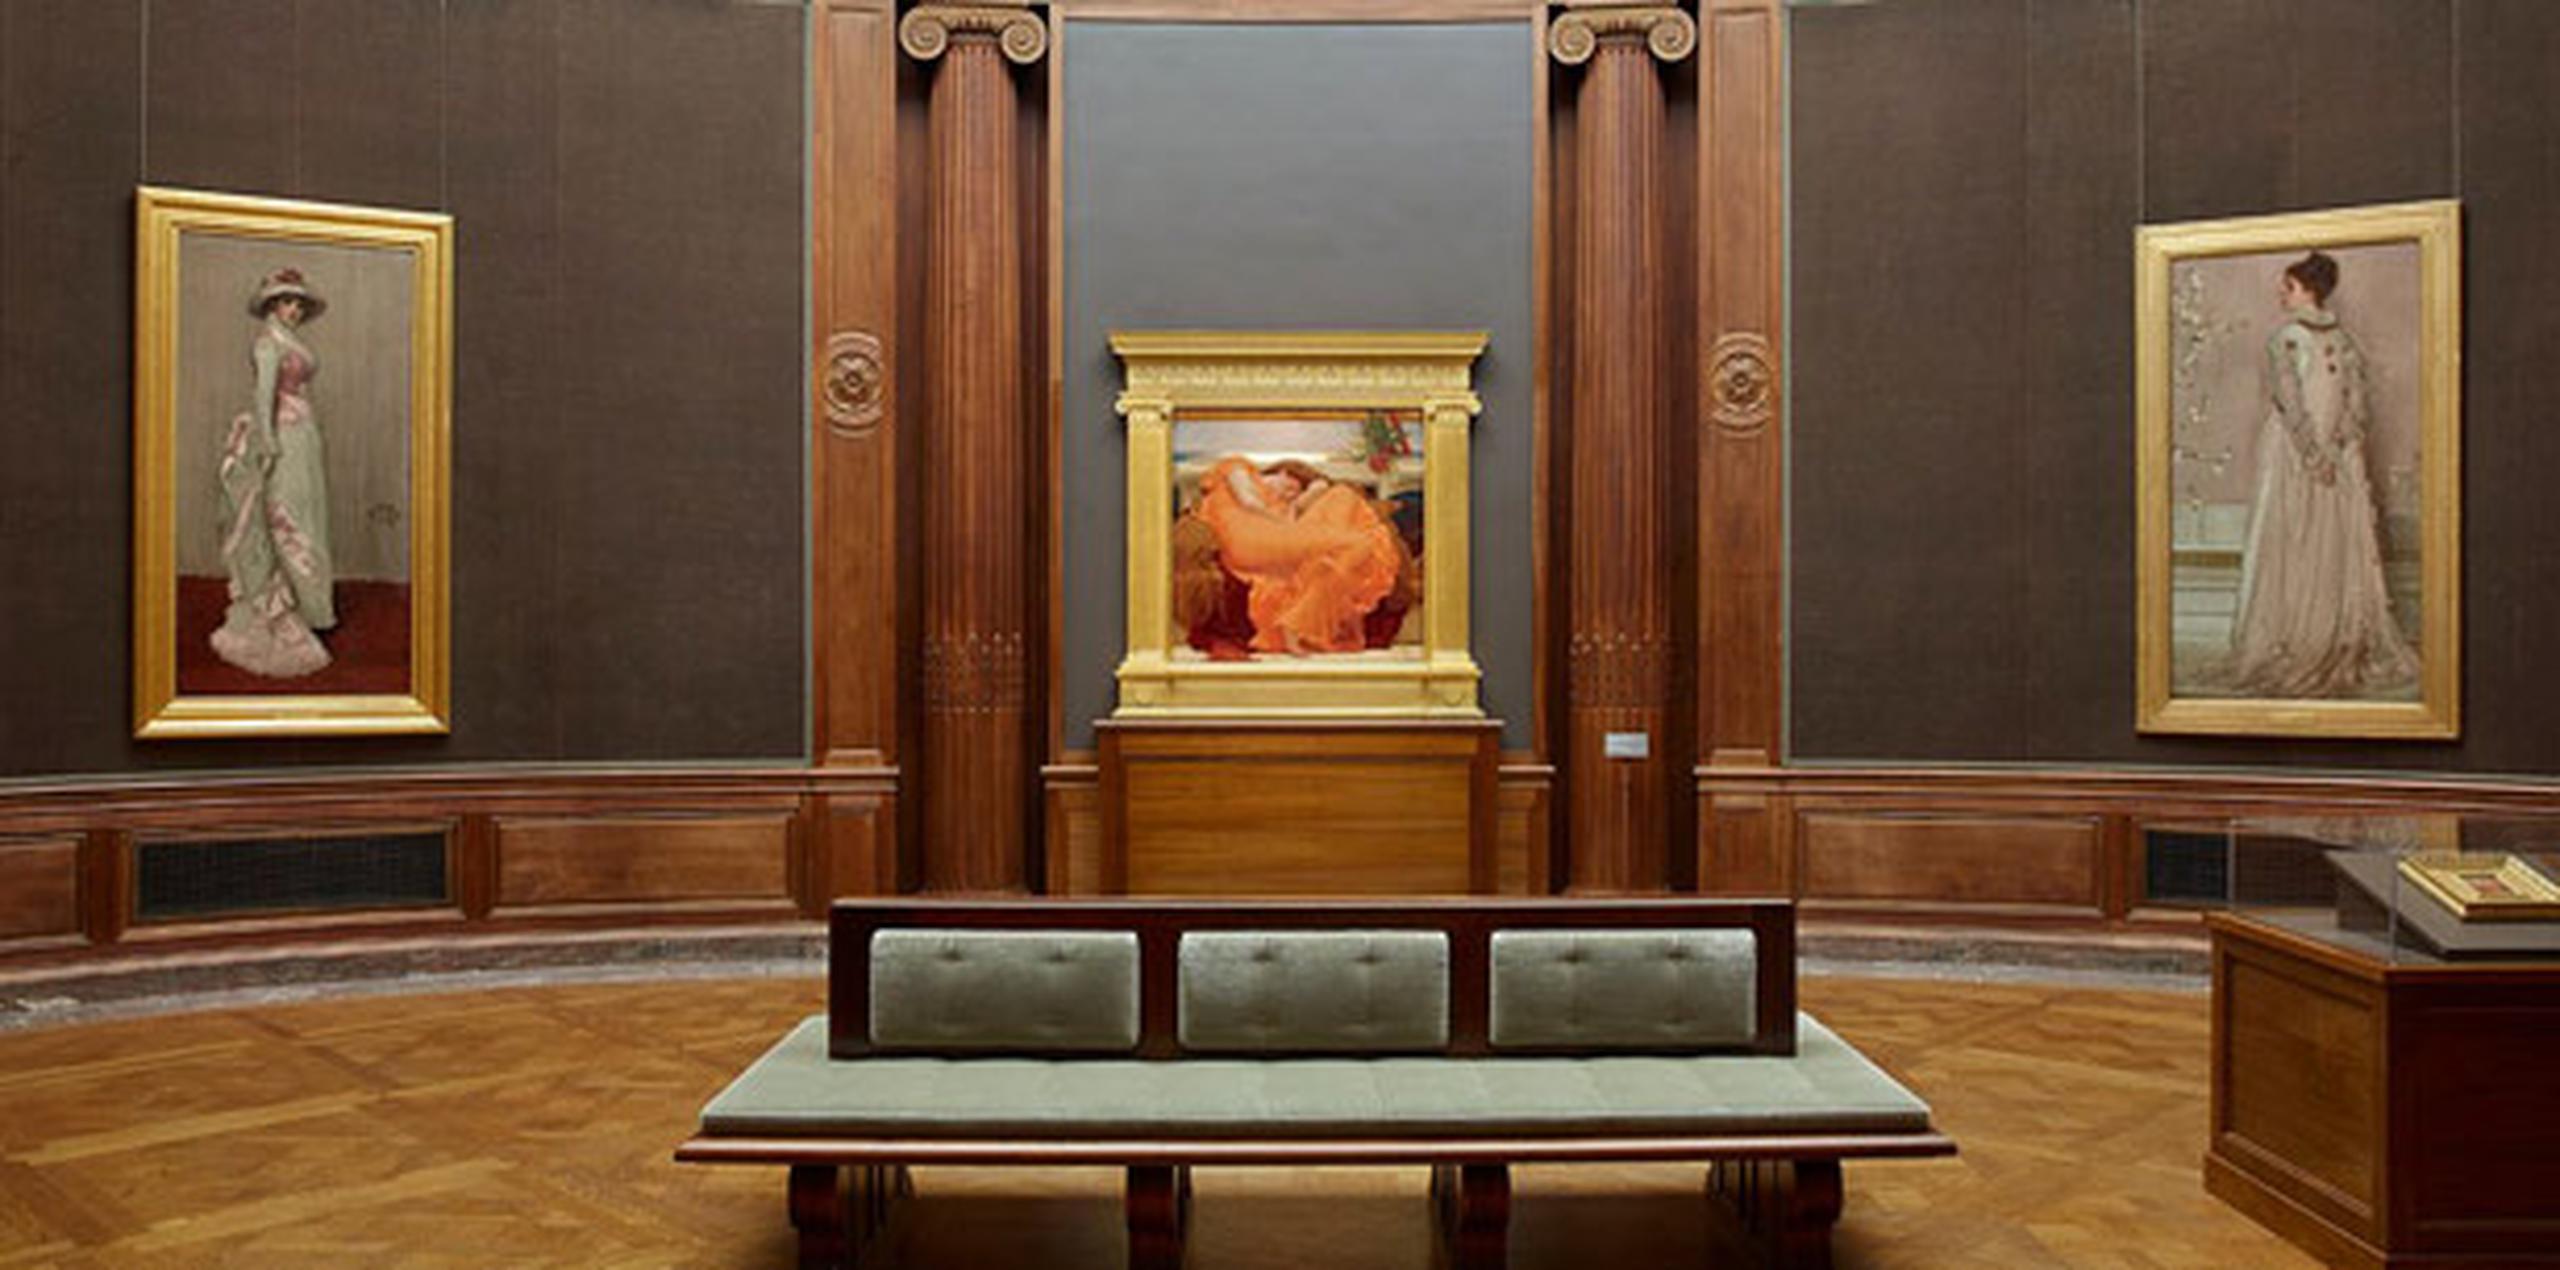 La pintura de Leighton estará ubicada hasta el 6 de septiembre en el Oval Room del museo neoyorquino y está acompañada de cuatro cuadros de McNeill. (Suministrada)